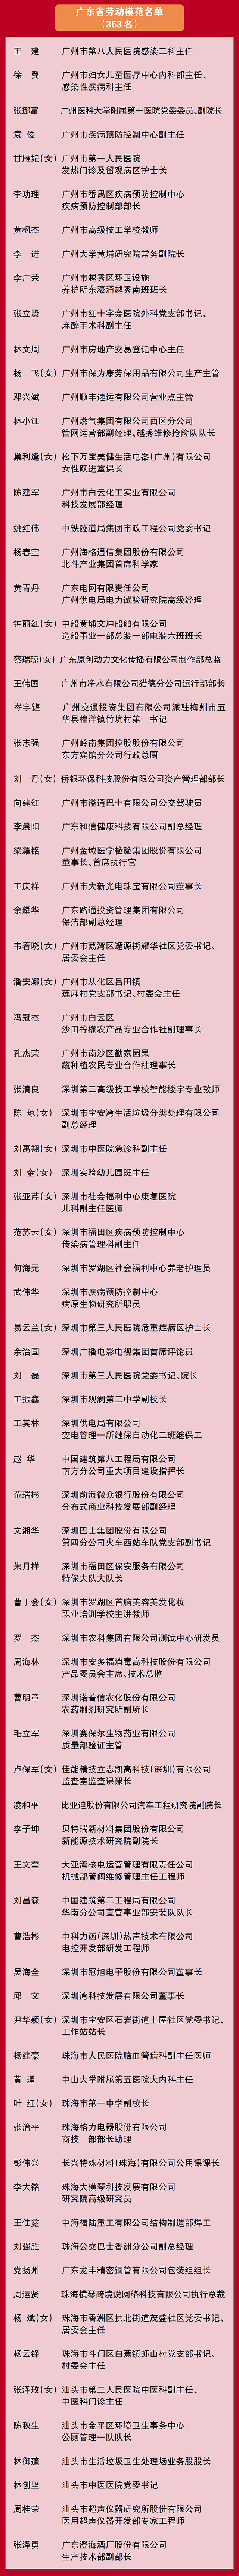 广东省劳动模范名单--01.jpg